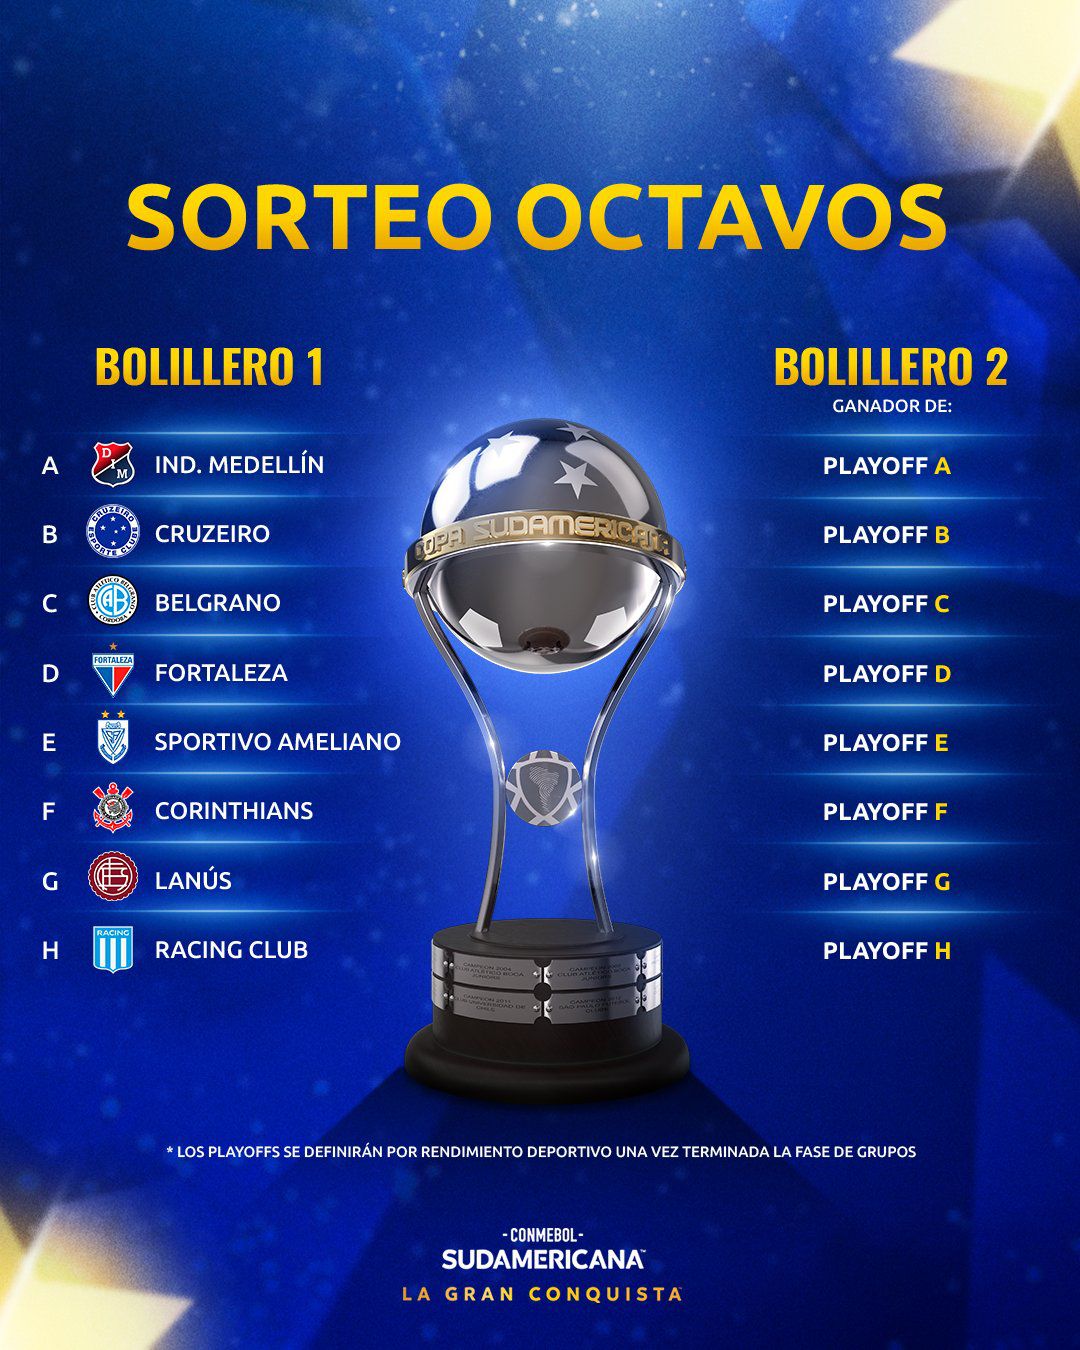 Sorteo octavos - Copa Sudamericana